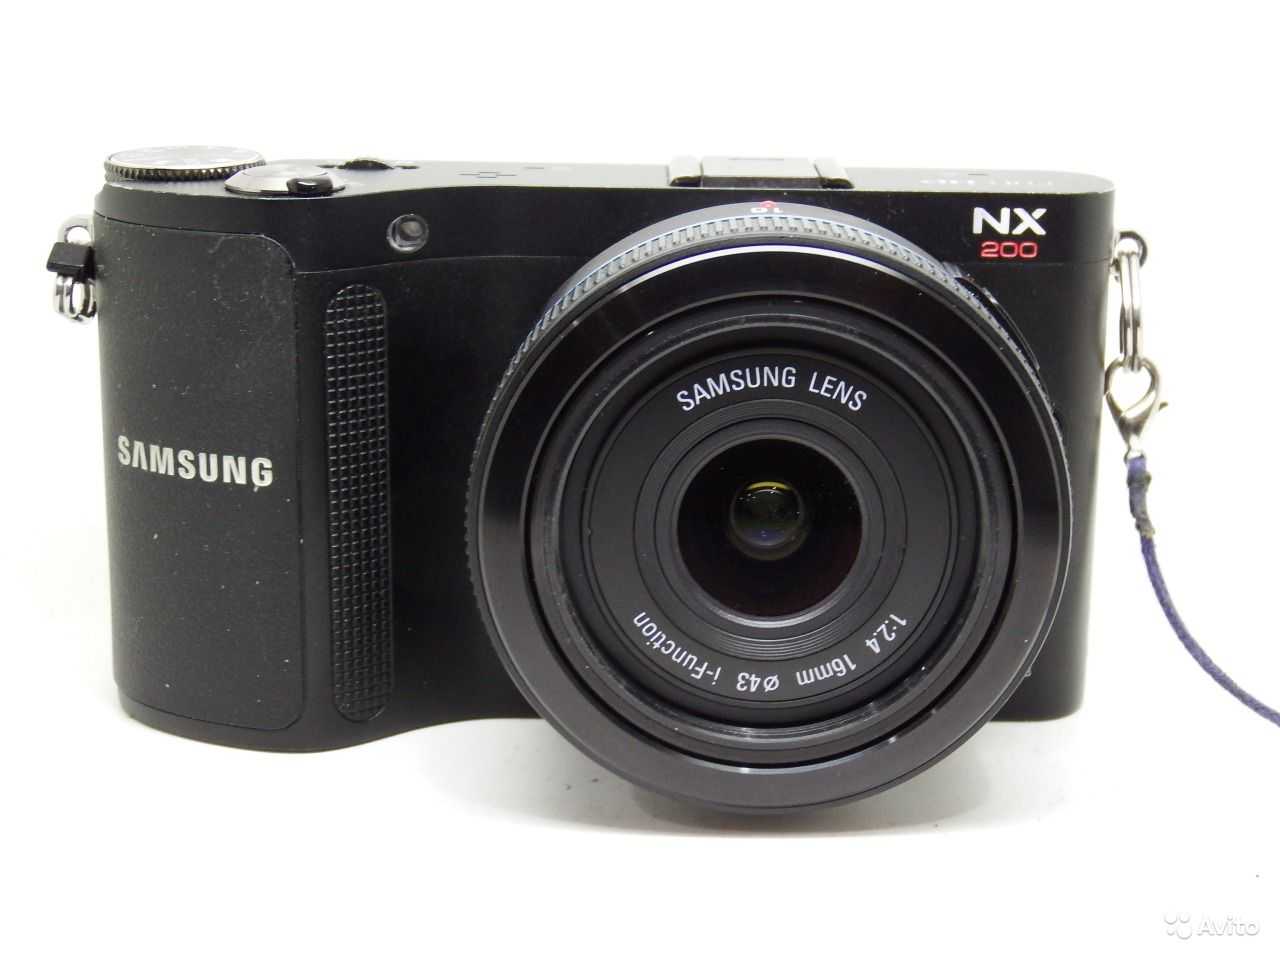 Фотоаппарат самсунг nx200 kit купить недорого в москве, цена 2021, отзывы г. москва